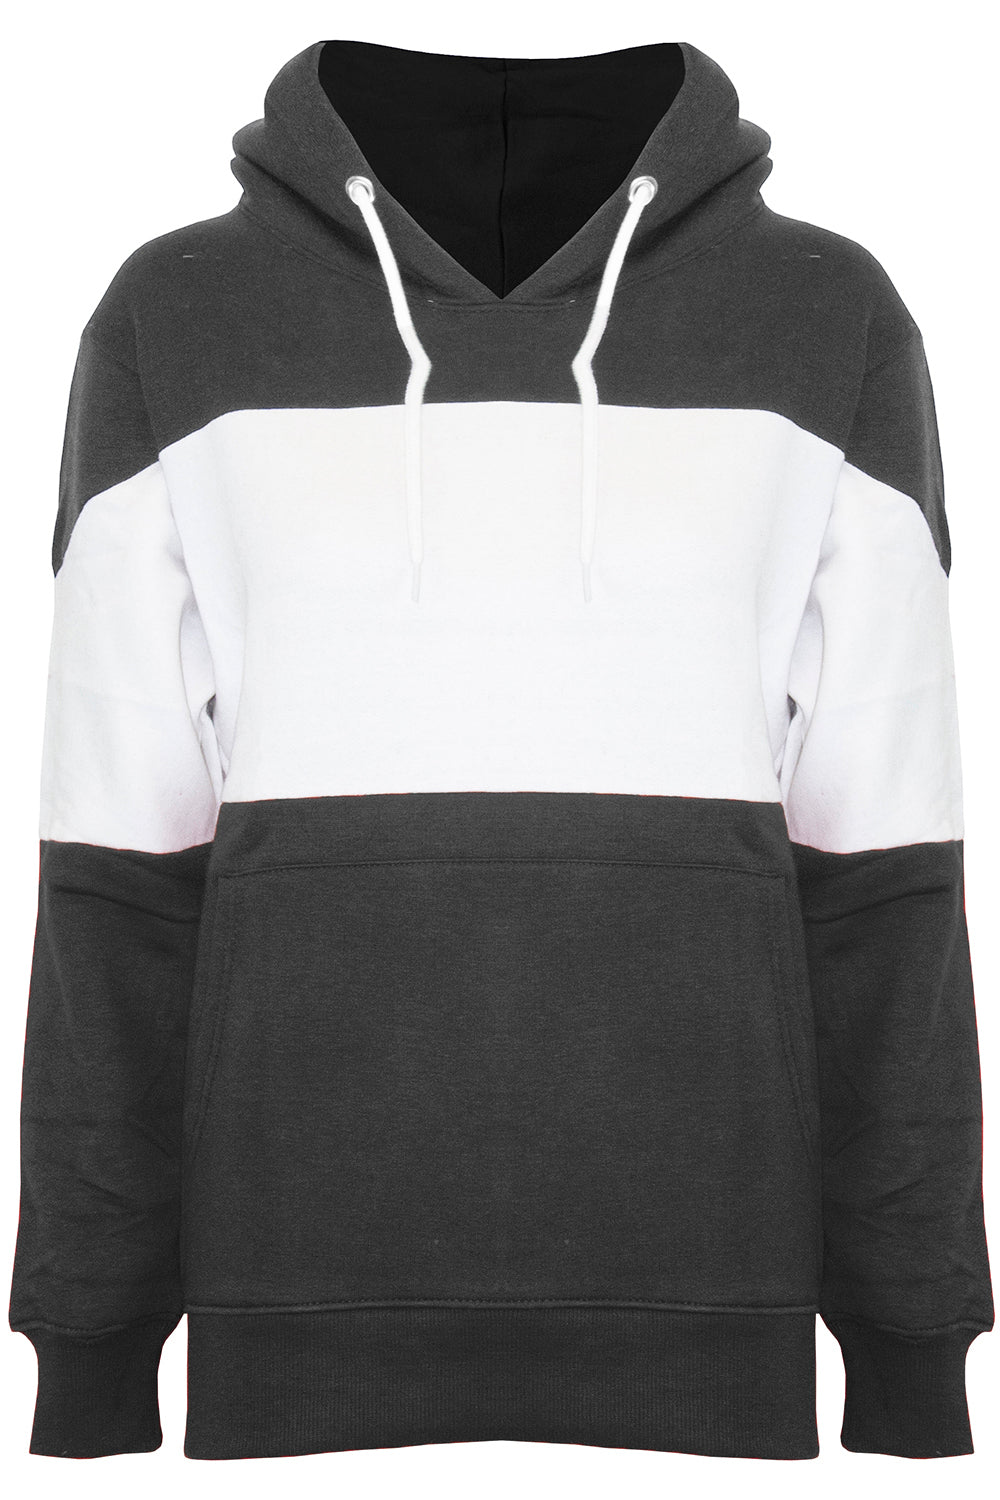 Zara Oversized Striped Hooded Sweatshirt